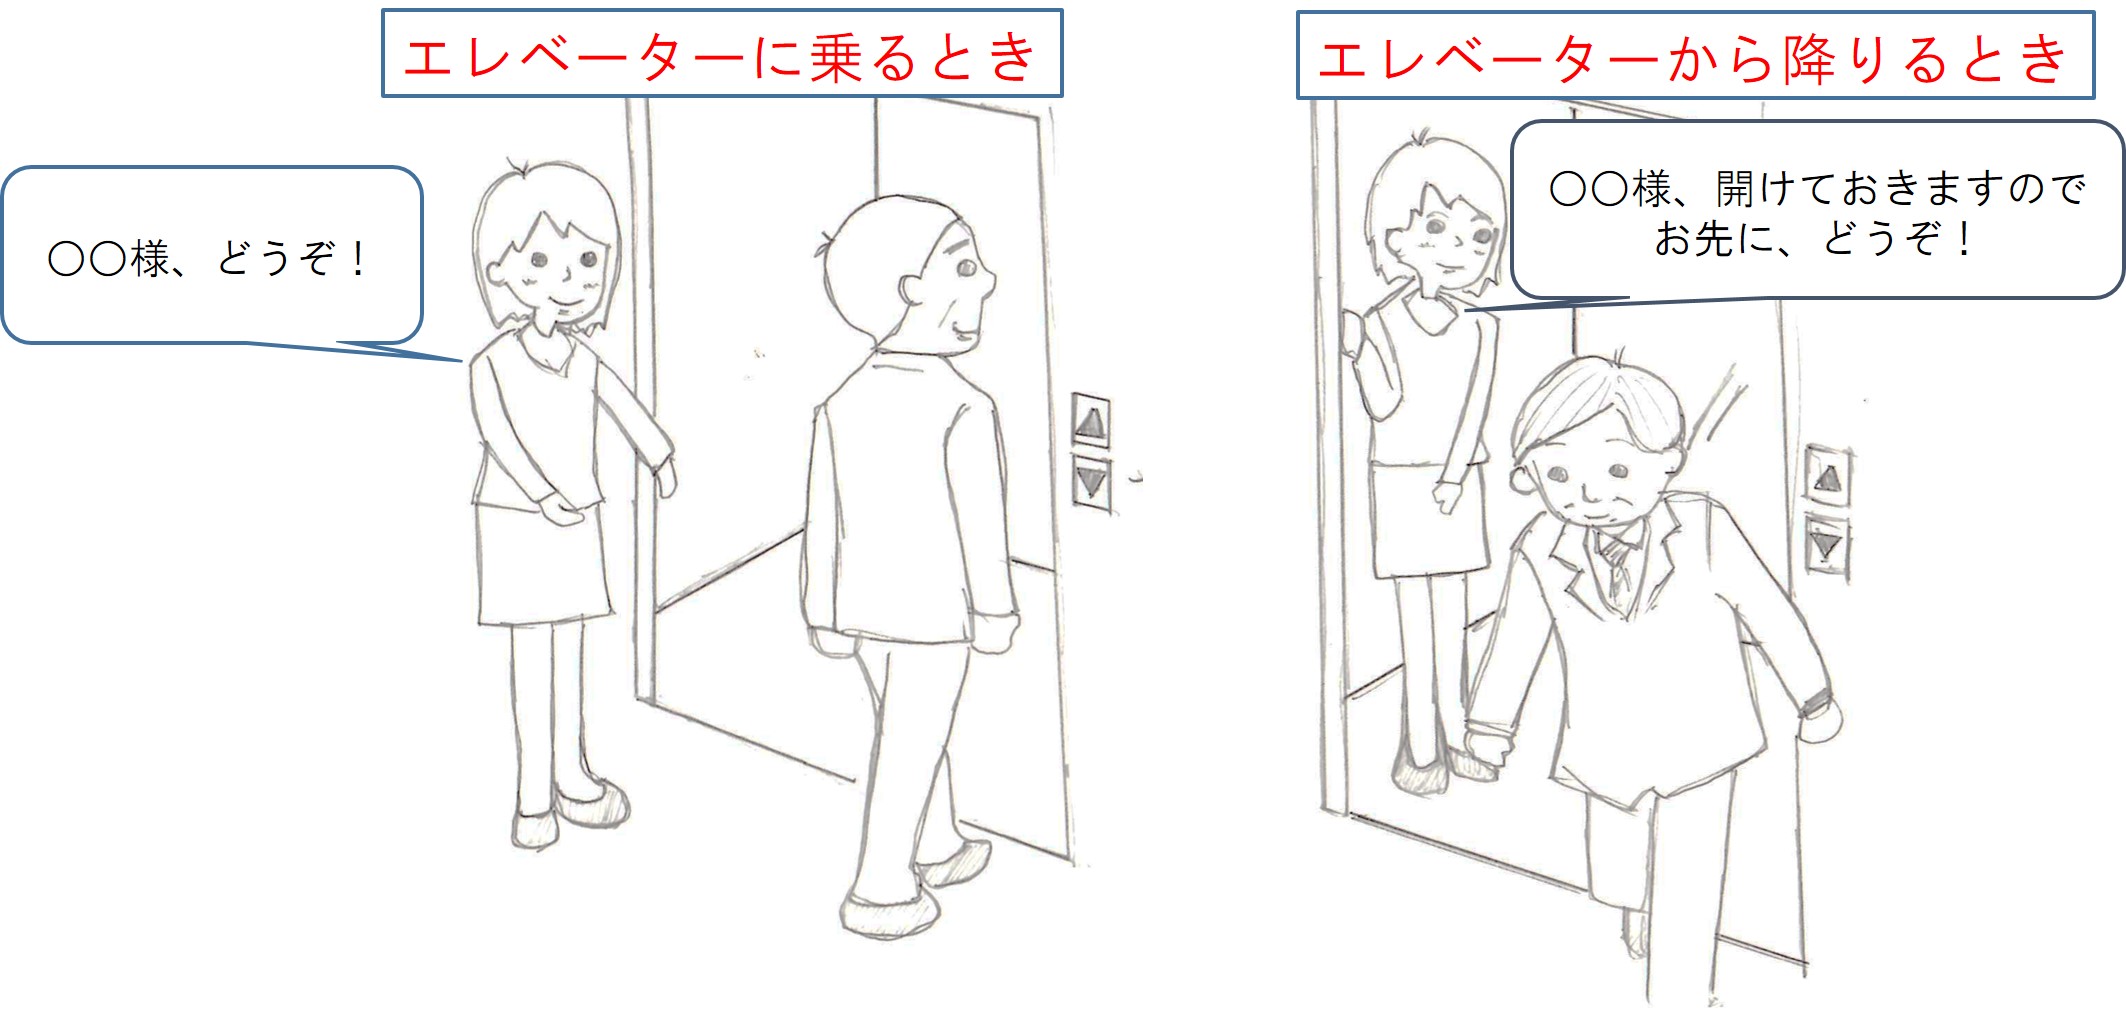 お客様対応のマナー：エレベーター案内のルール